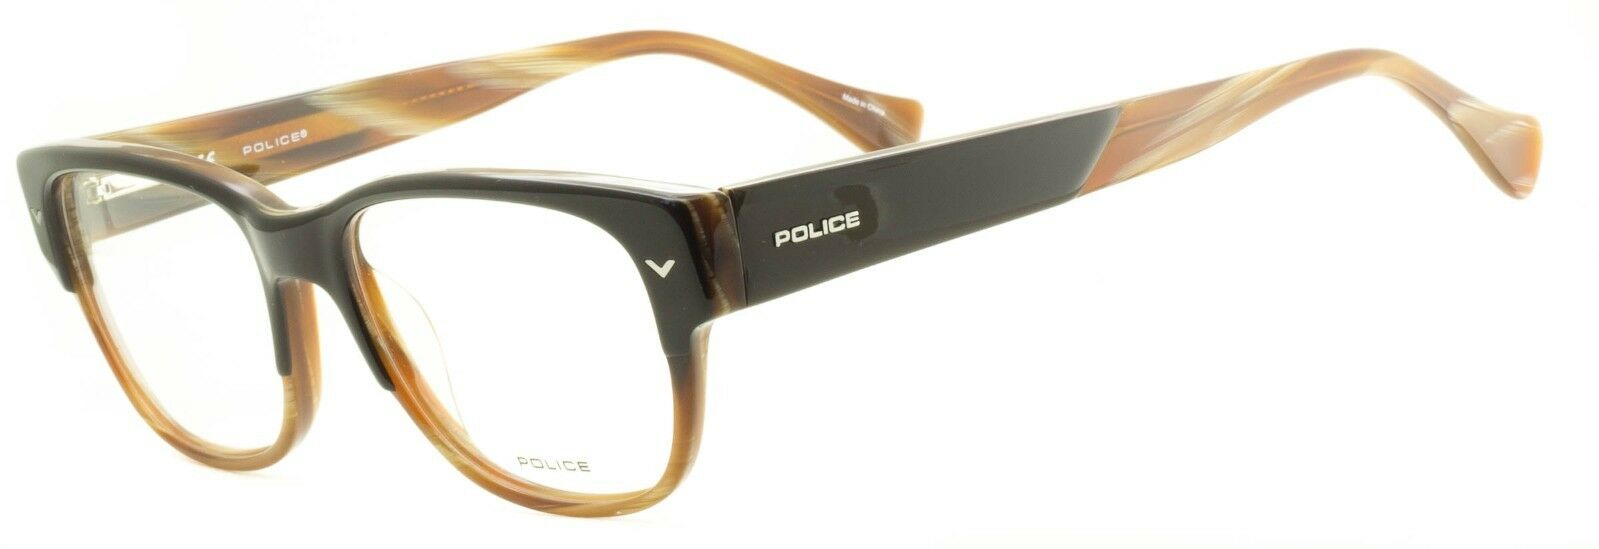 POLICE V 1765 COL 06Z6 Eyewear FRAMES - NEW RX Optical Eyeglasses Glasses - BNIB